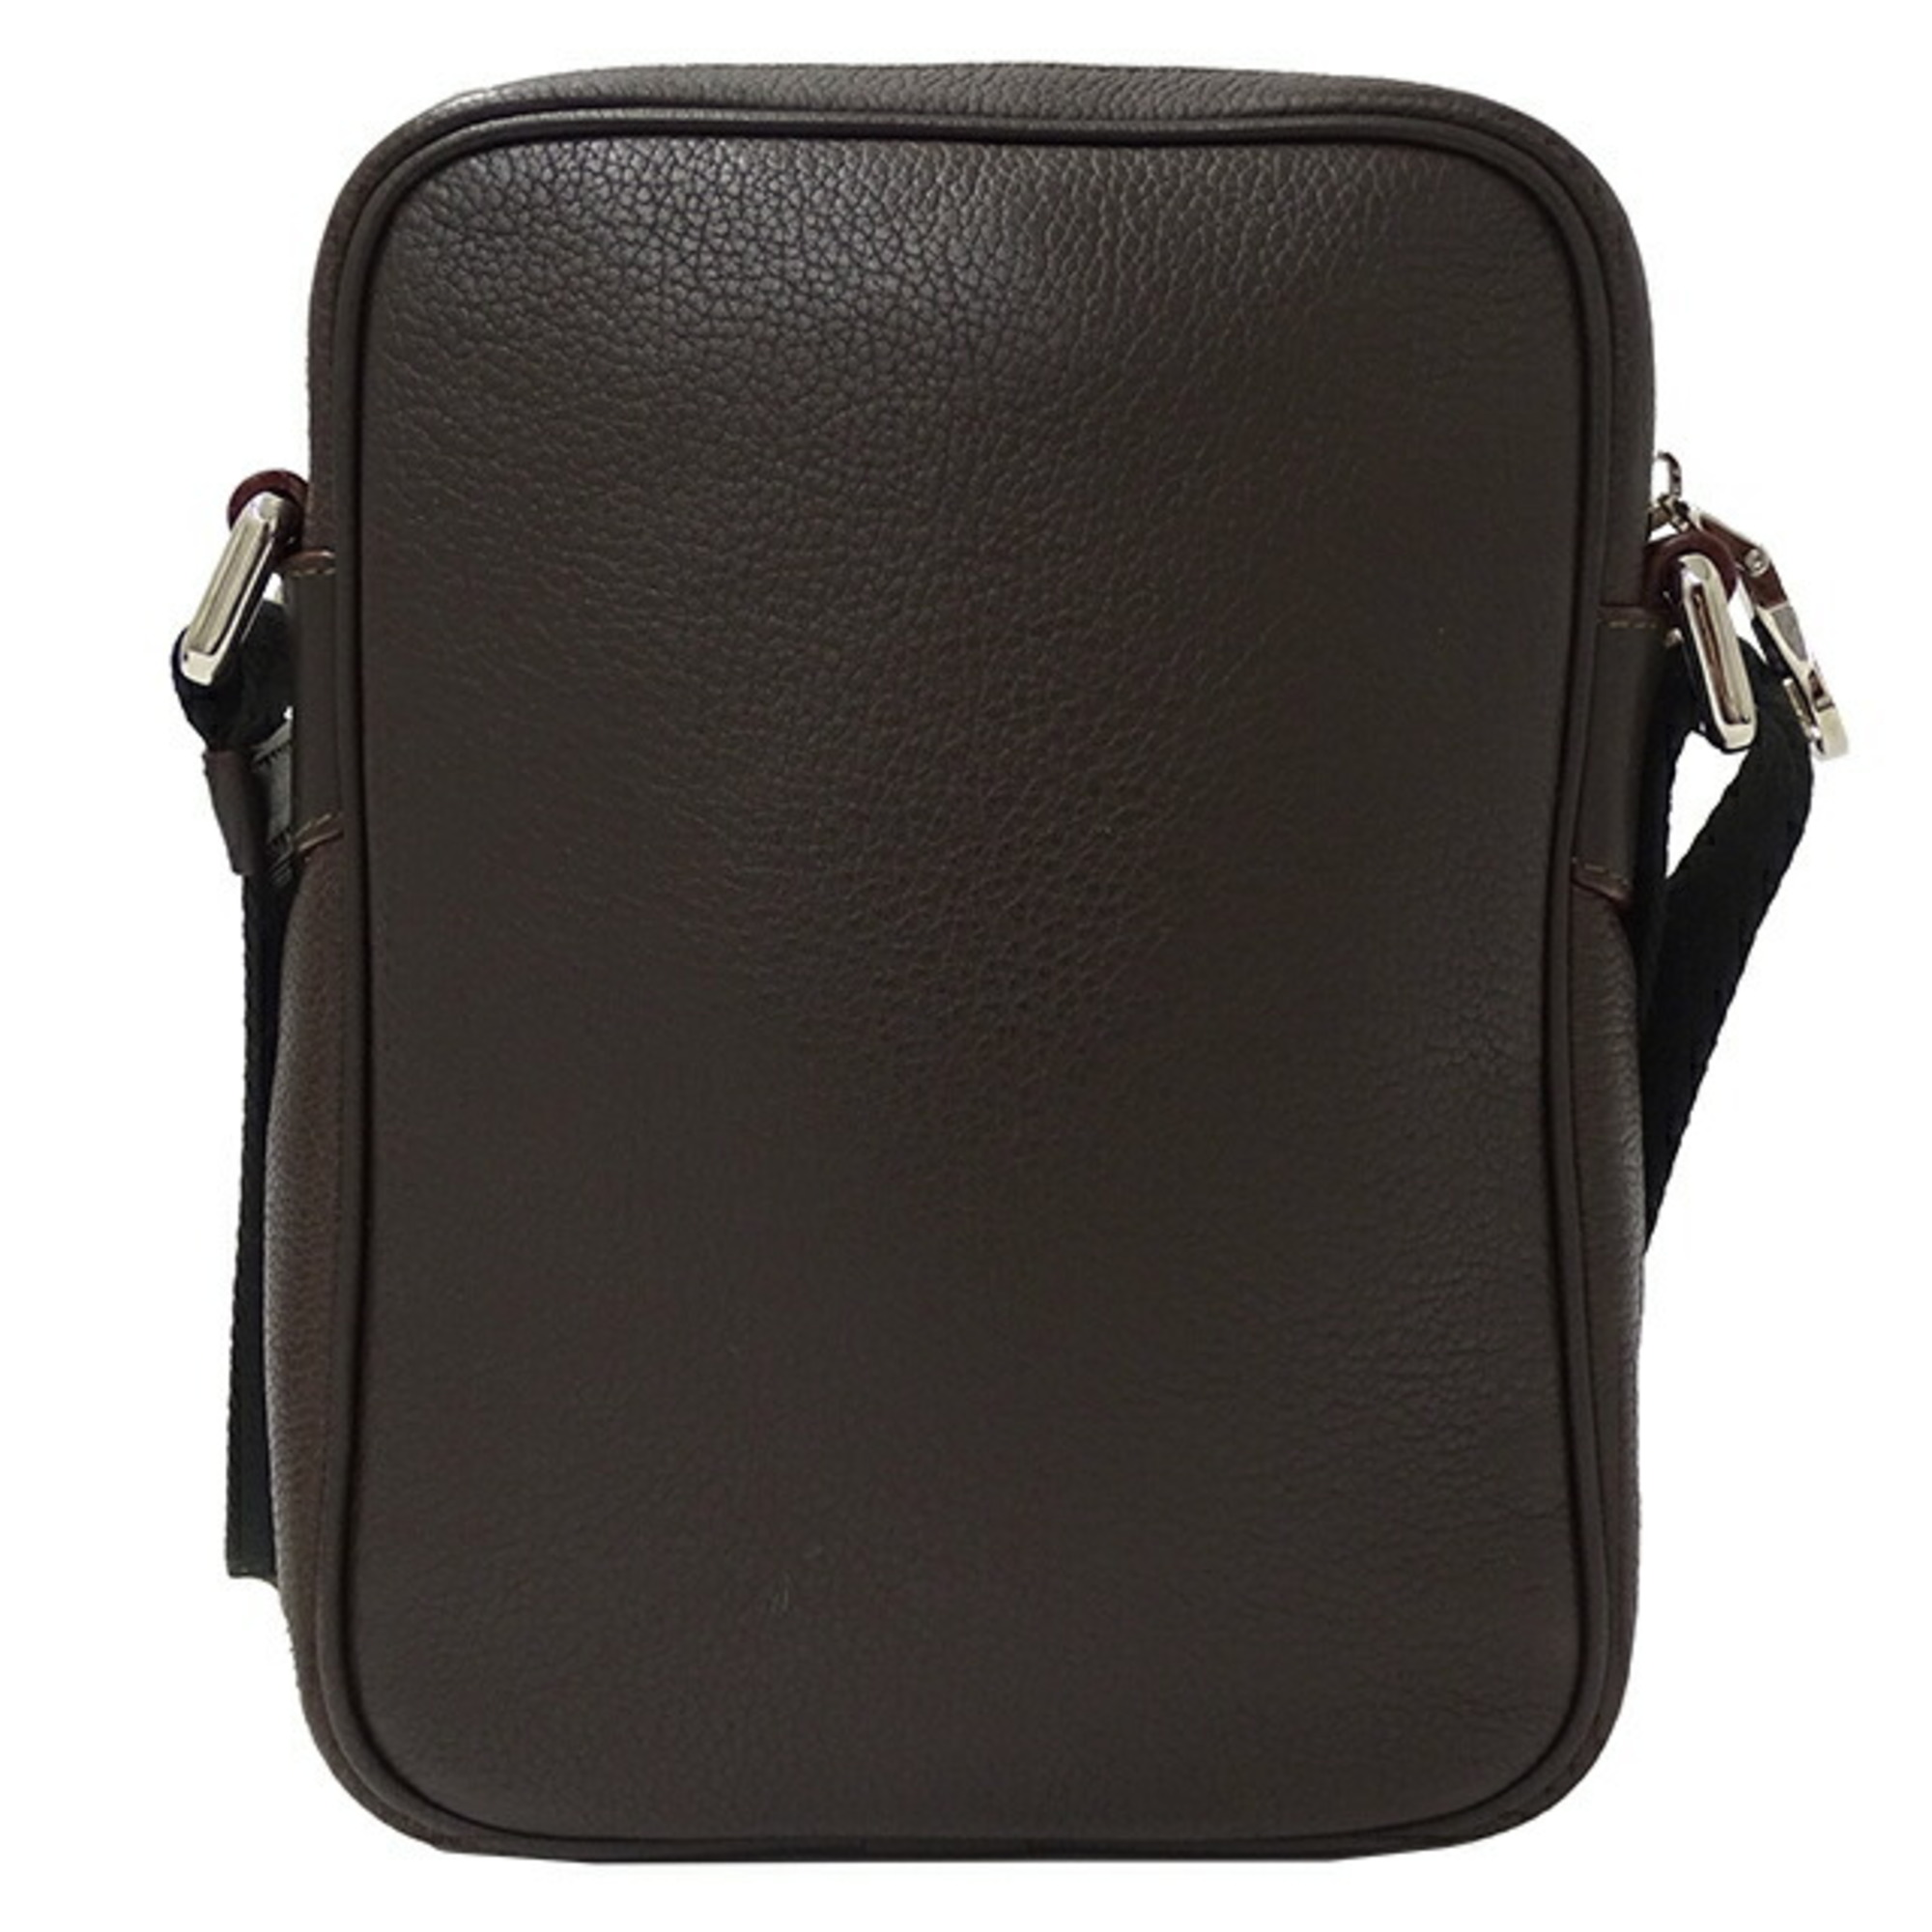 LOEWE Women's Shoulder Bag Leather Dark Brown Compact